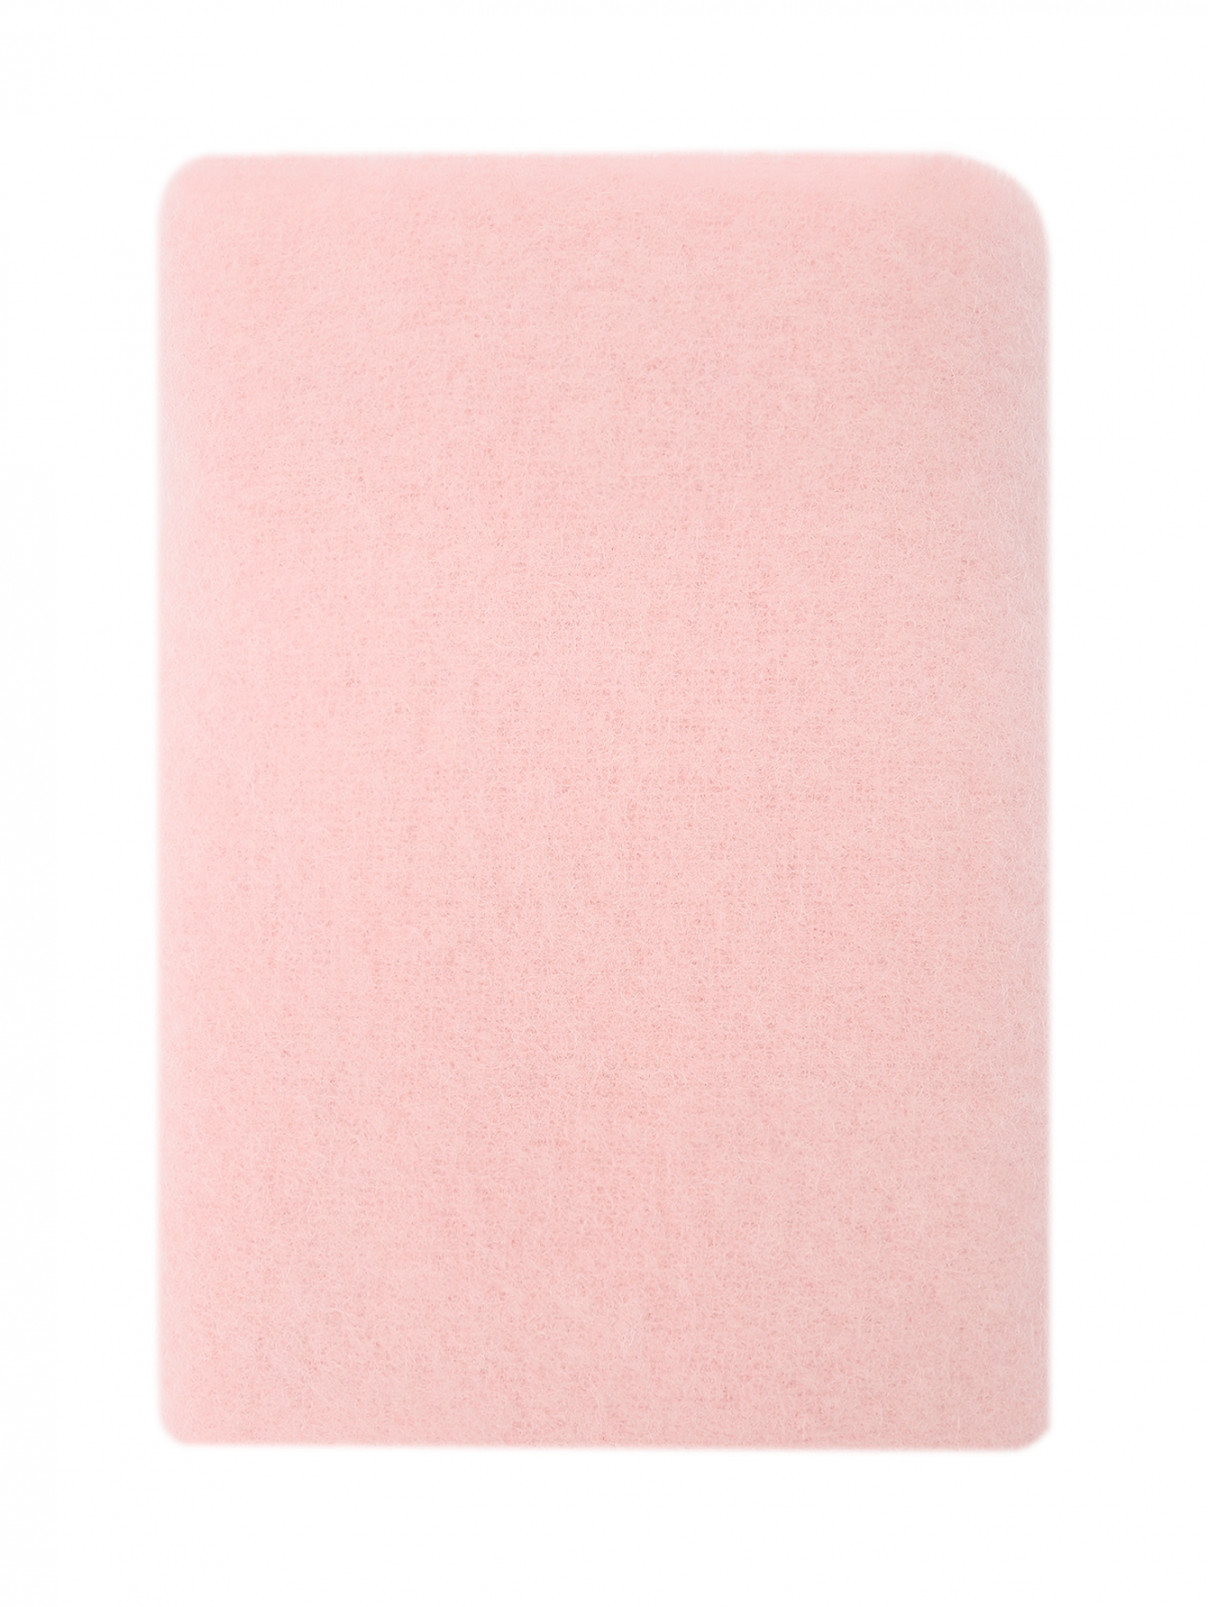 Однотонный шарф с бахромой из альпаки Alysi  –  Общий вид  – Цвет:  Розовый